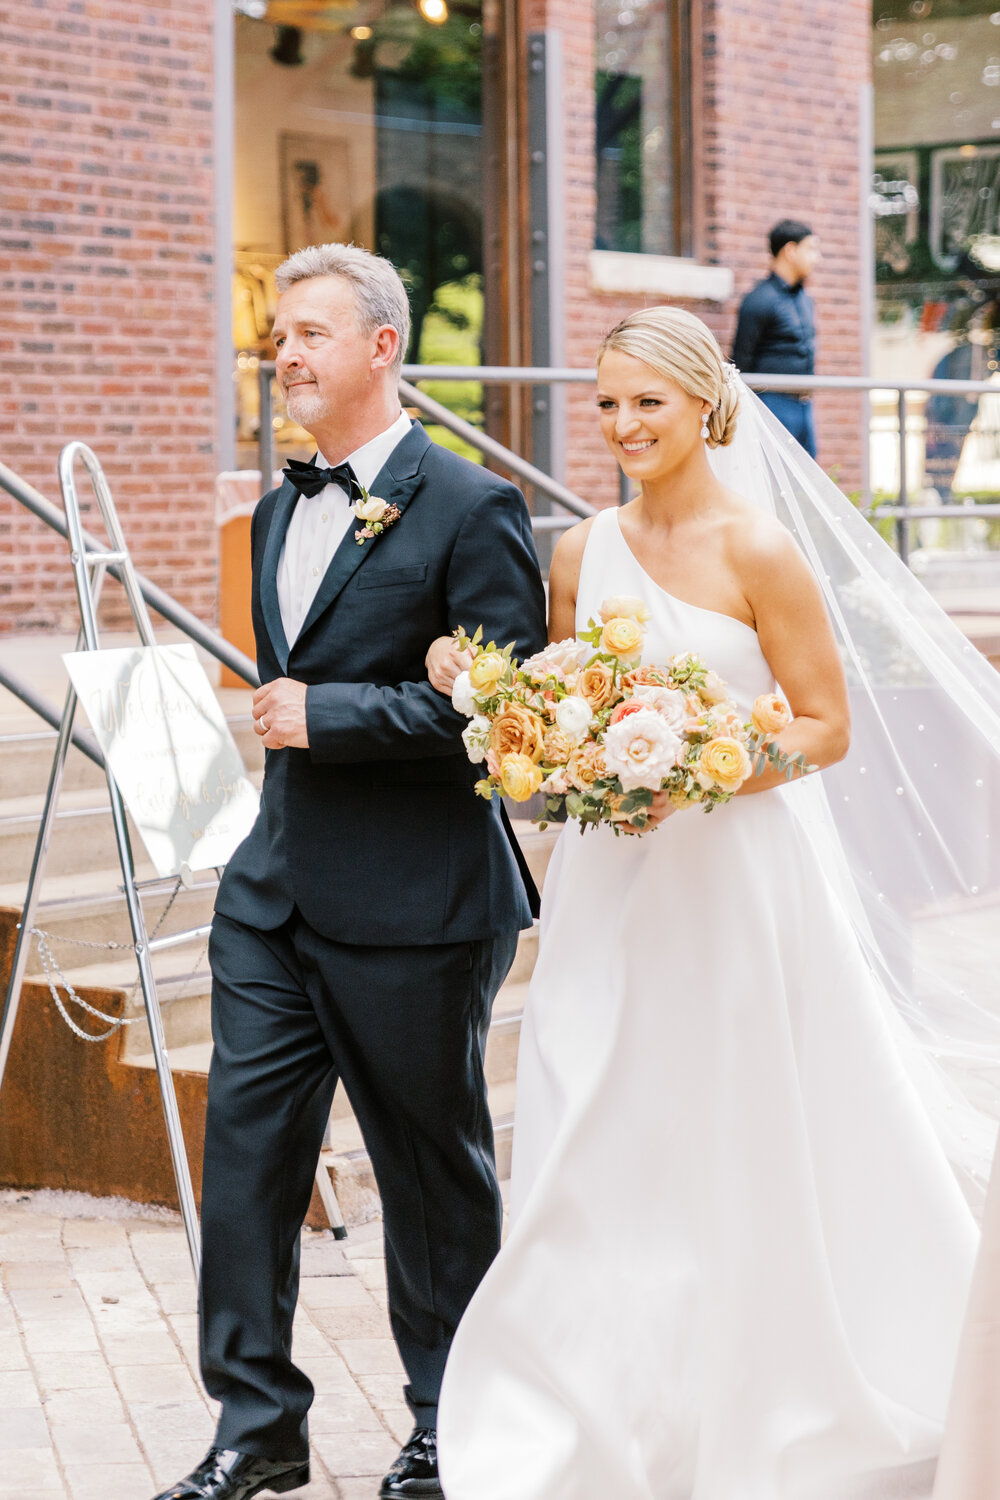 Bridgeport Art Center Chicago Wedding | Willrett Flower Co |  Chicago Wedding Resources | Wedding Planning Resources | Your Day by MK | 